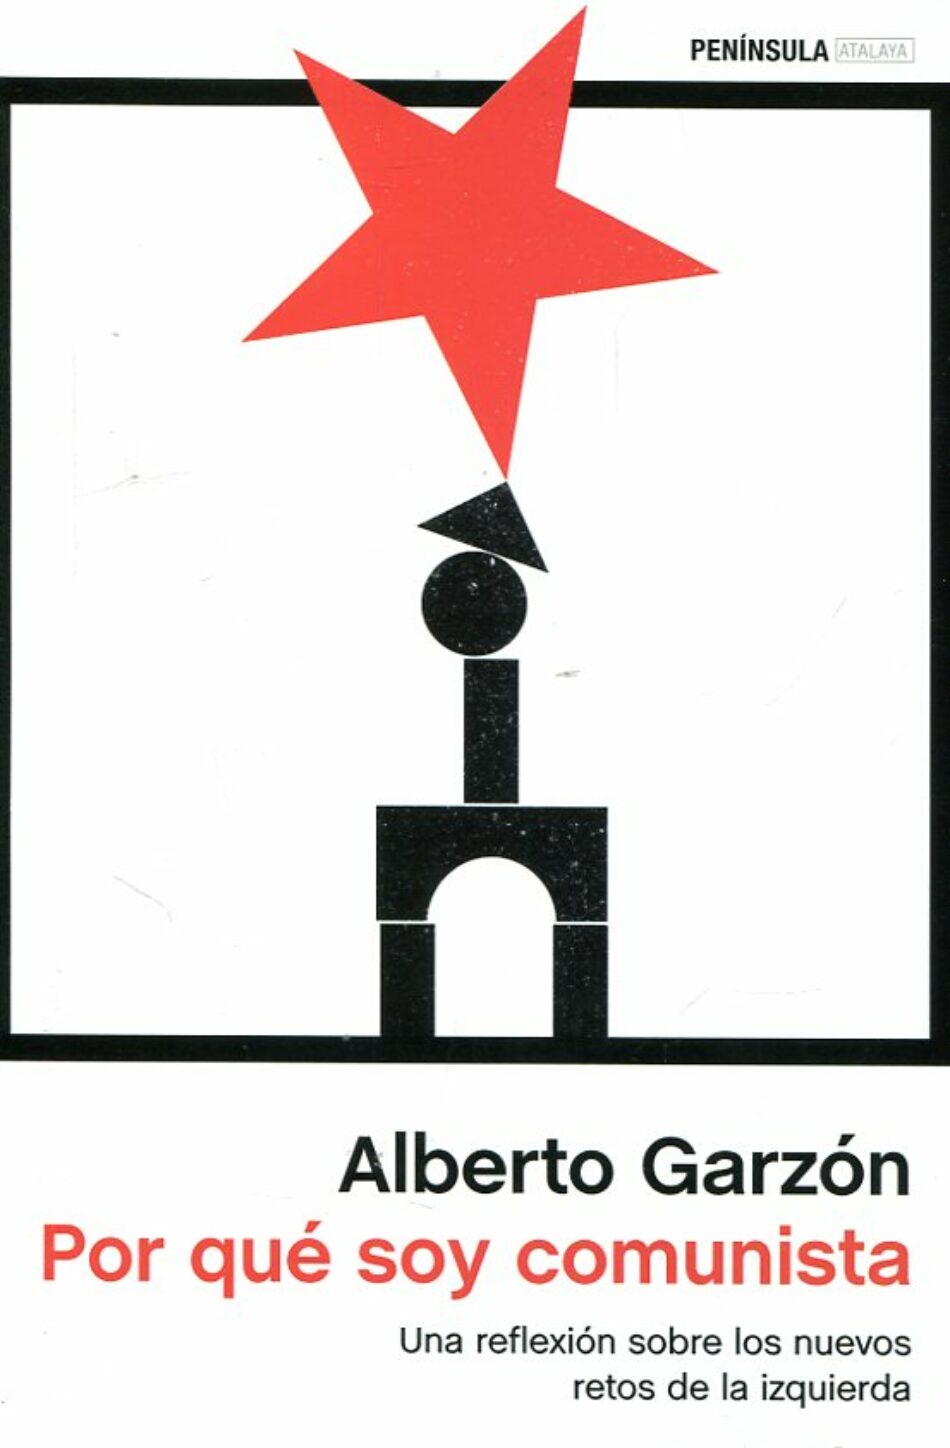 Alberto Garzón y Julio Anguita: Presentación del libro «¿Por qué soy comunista?»